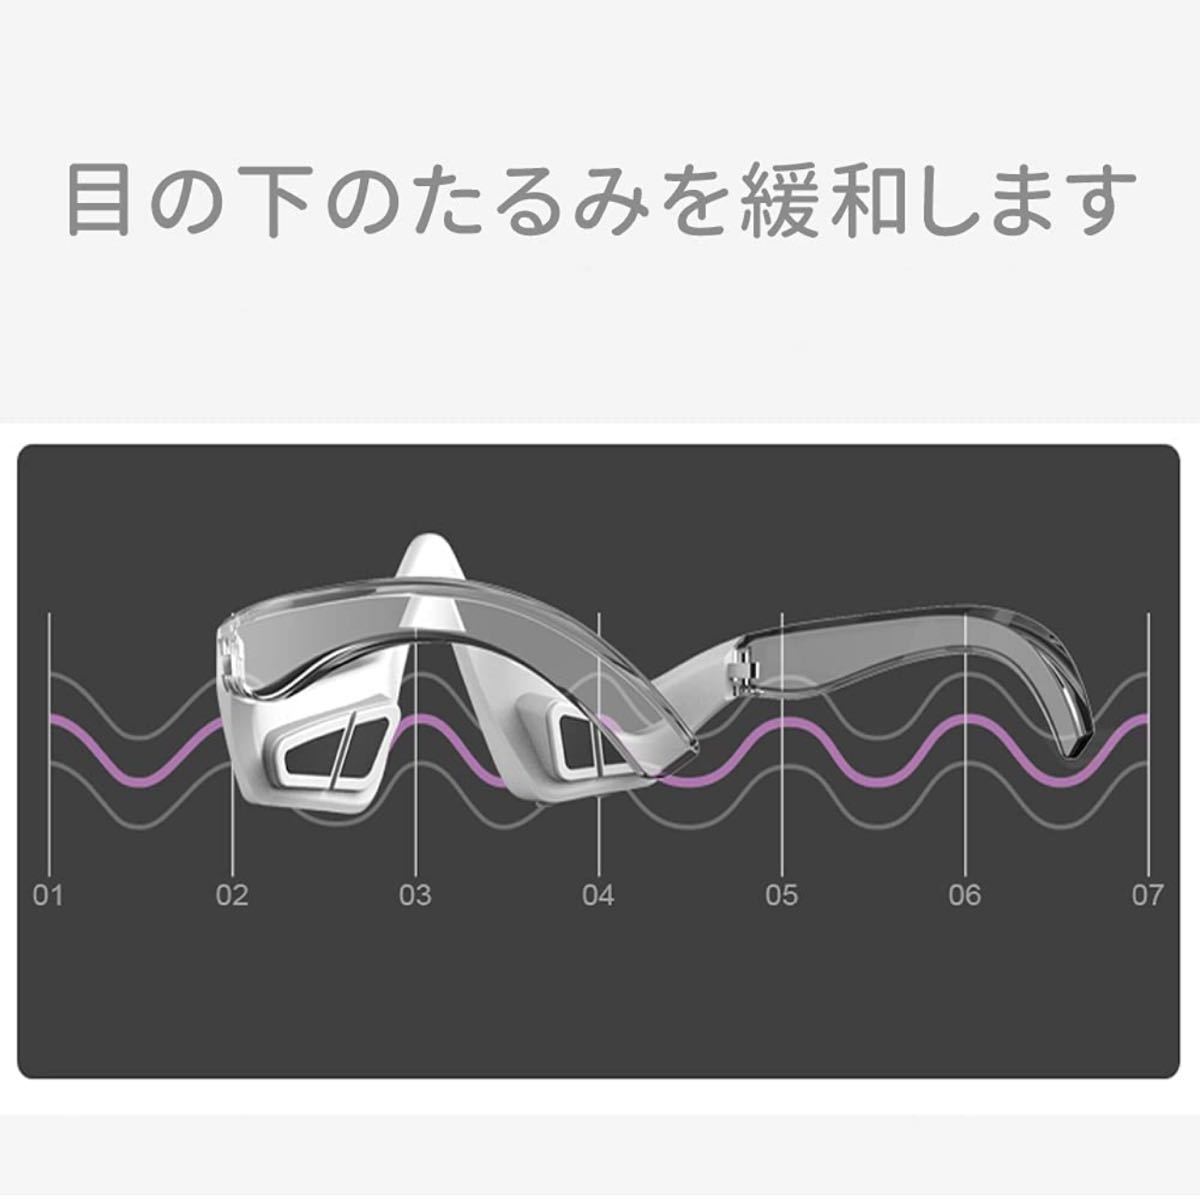 目元ケア 目元美顔器 温熱ケア EMS美顔器 低周波 超音波振動 3種モード 超軽量 目の下のケア USB充電式 日本語取扱説明書